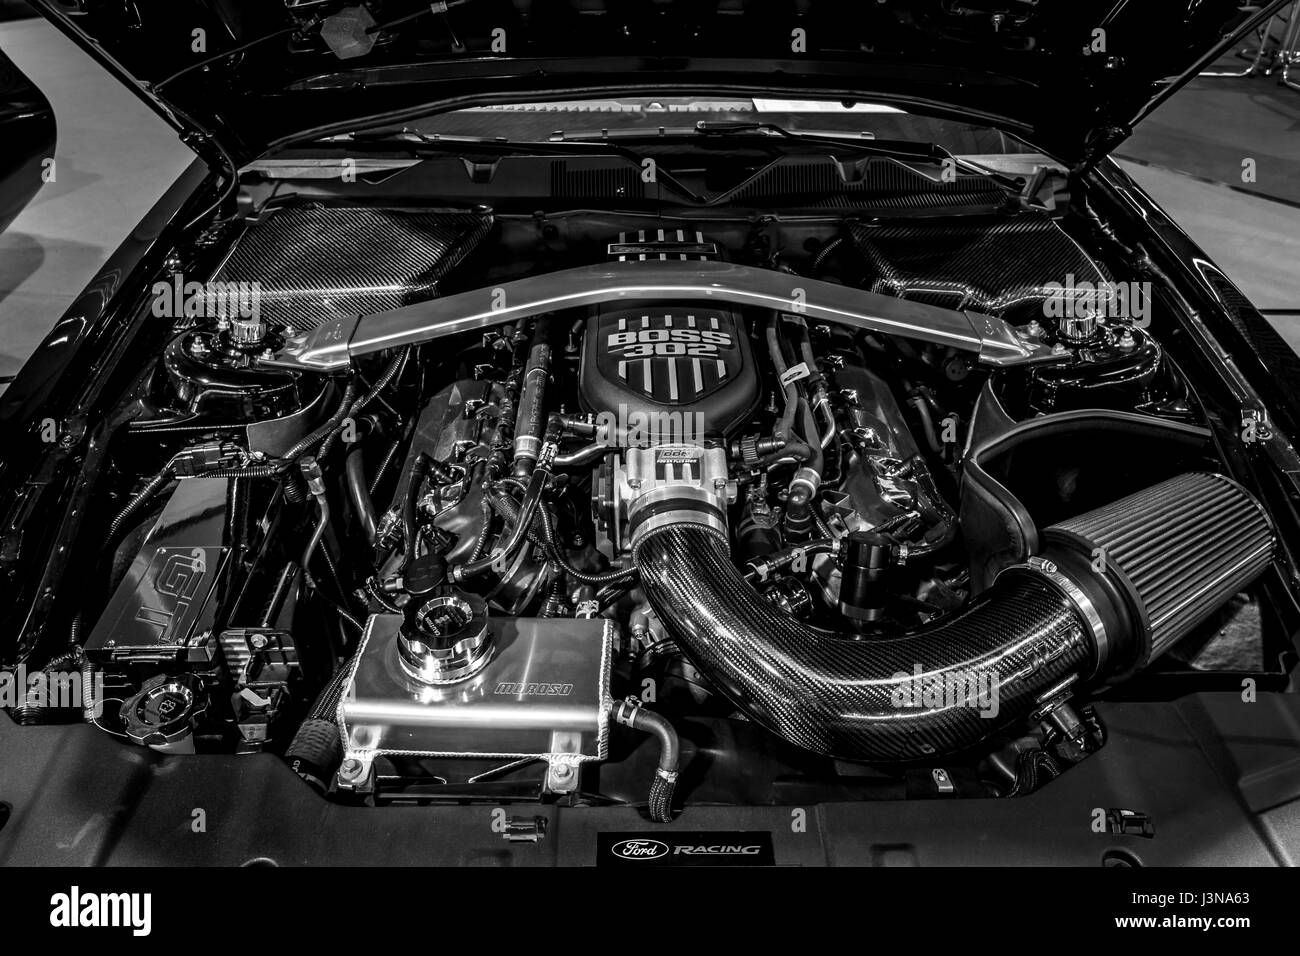 STUTTGART, Alemania - Marzo 03, 2017: El motor de la Ford Mustang GT 'Warrior' edición especial del Ejército de Estados Unidos, 2014. Close-up. Blanco y negro. Europa la mayor exposición de coches clásicos clásicos 'retro' Foto de stock